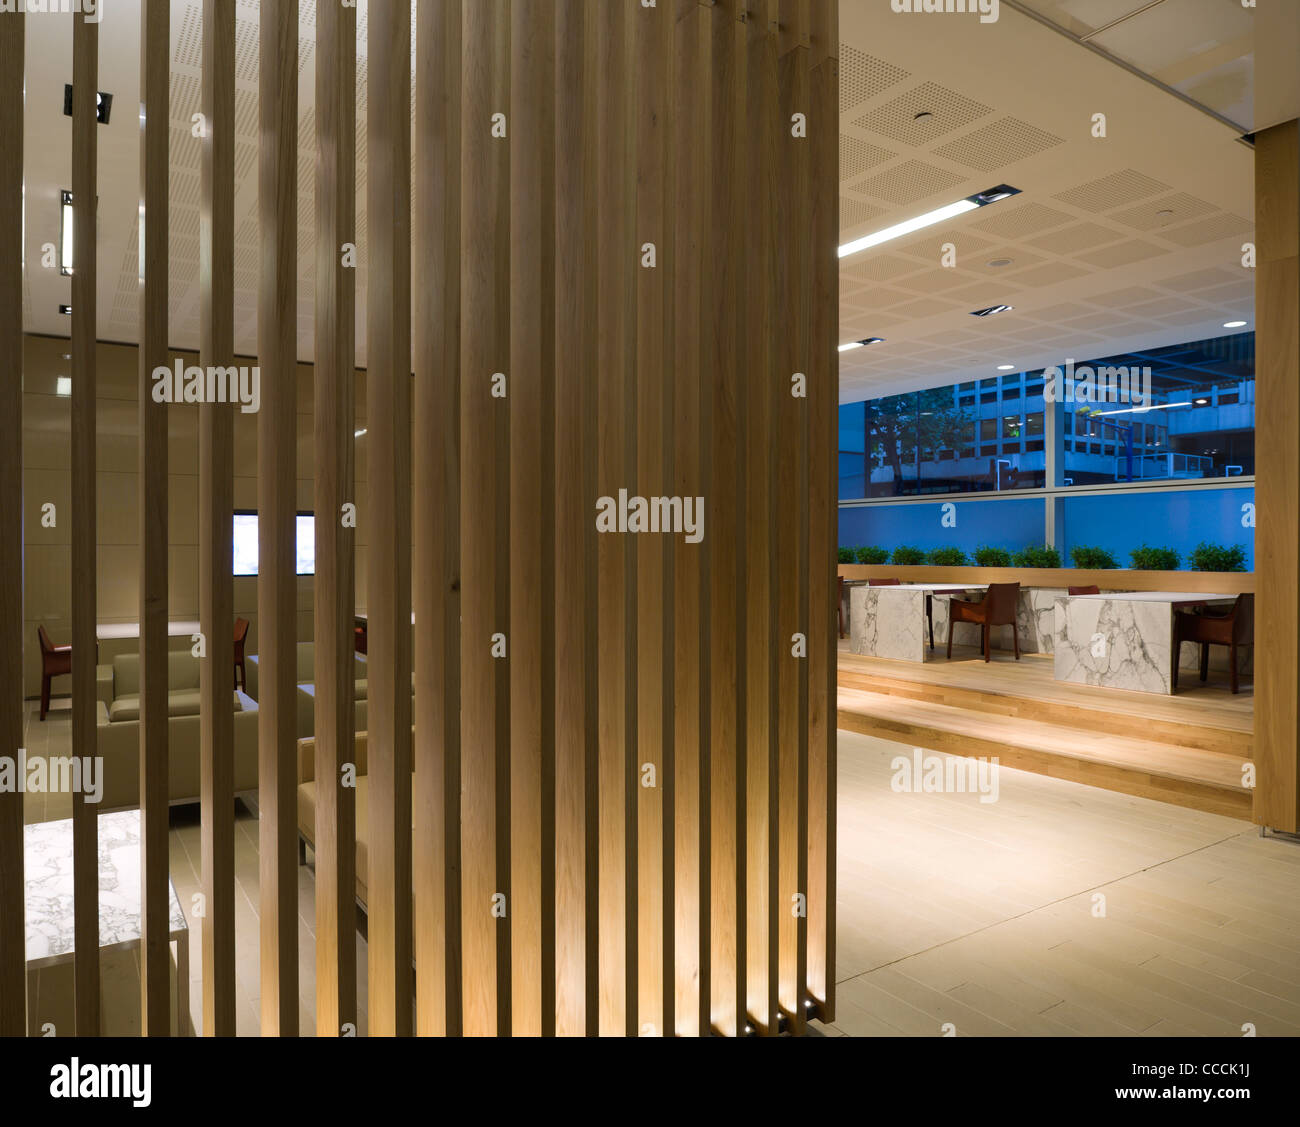 Büro-Eingangsbereich zu Wasserzeichen, besetzt von Nomura. Architektur von Fletcher Priester und Lichtplanung von Waterman Stockfoto